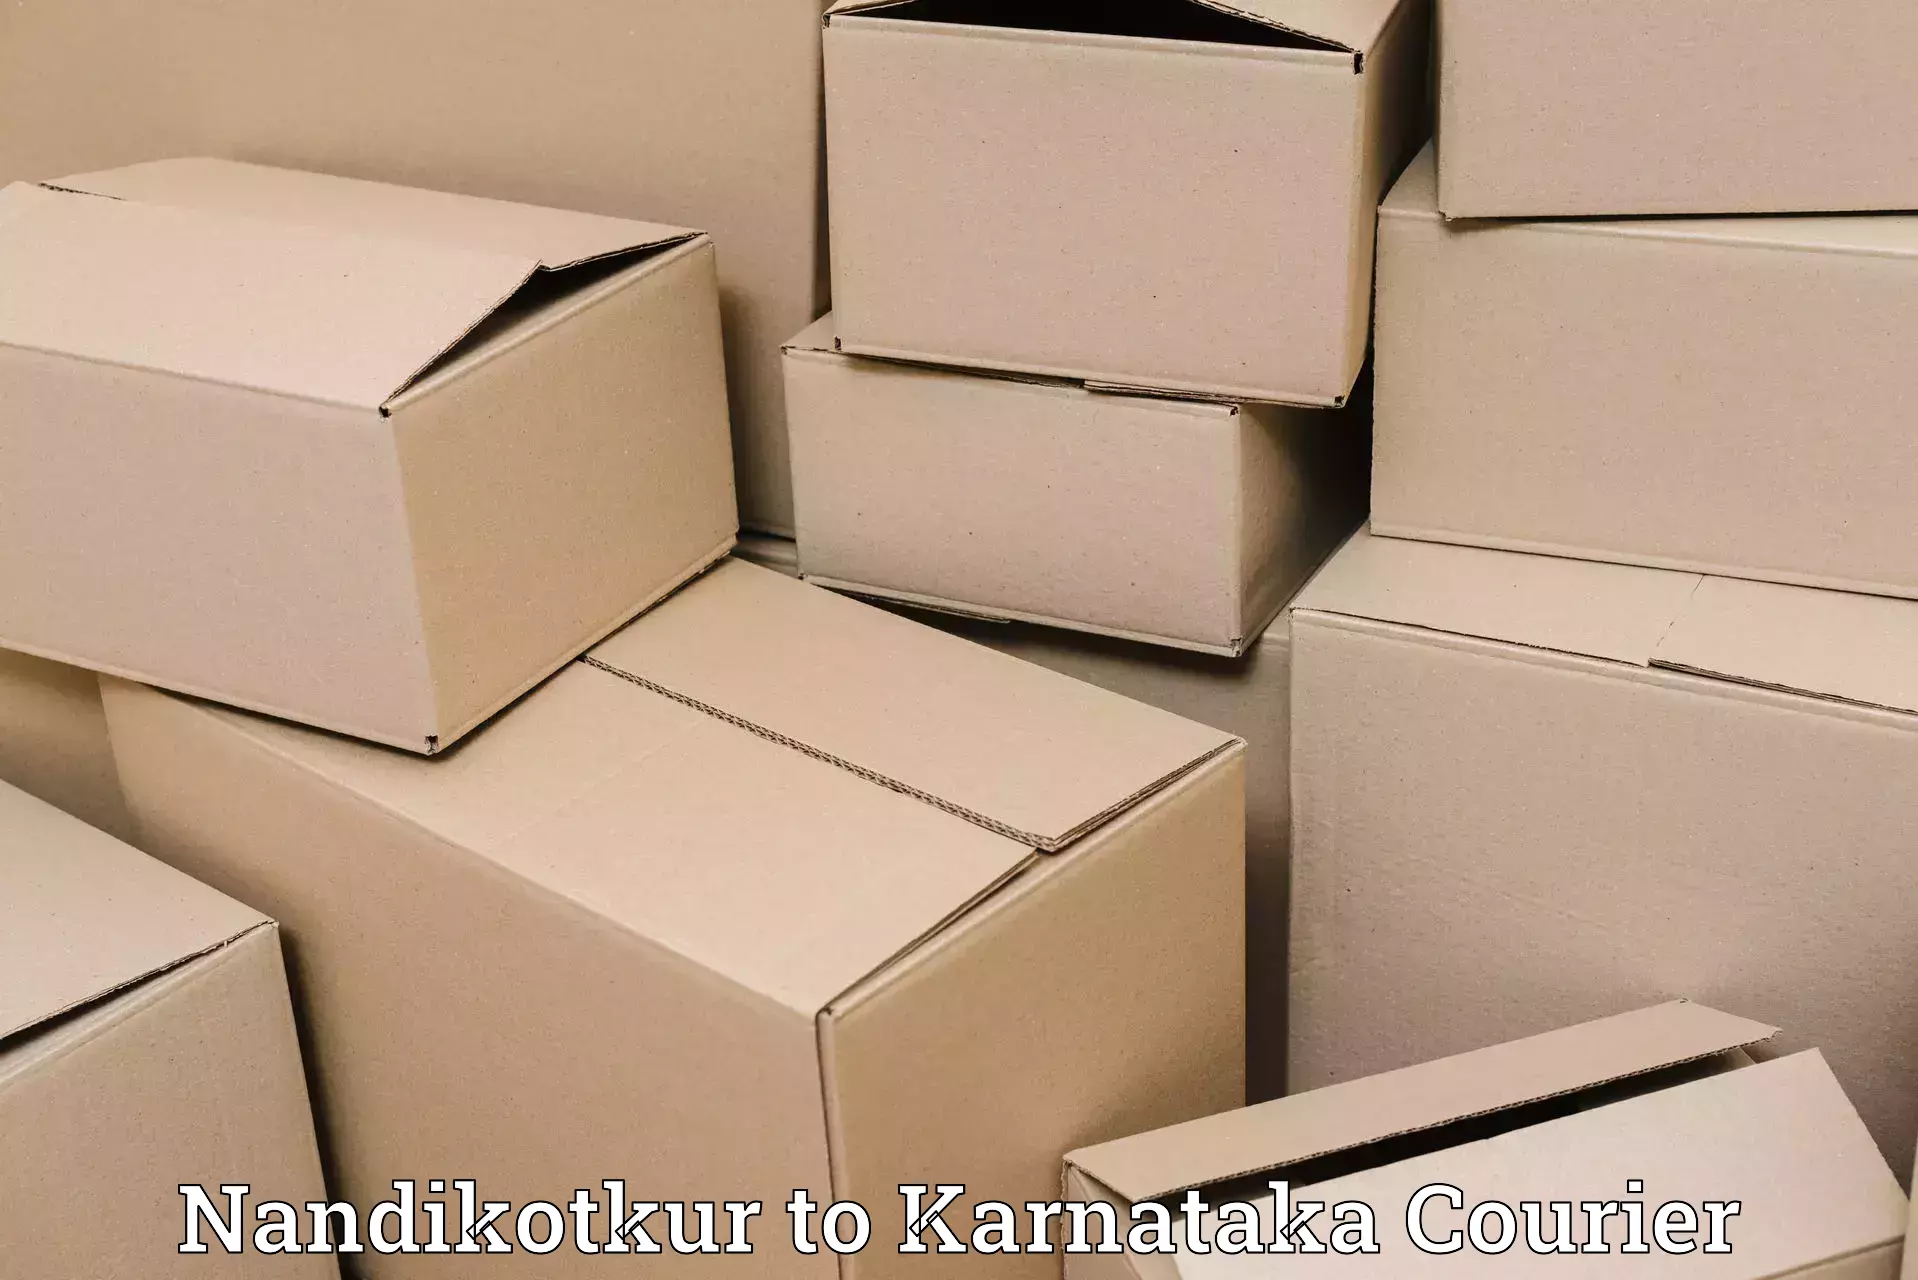 Next day courier Nandikotkur to Karnataka